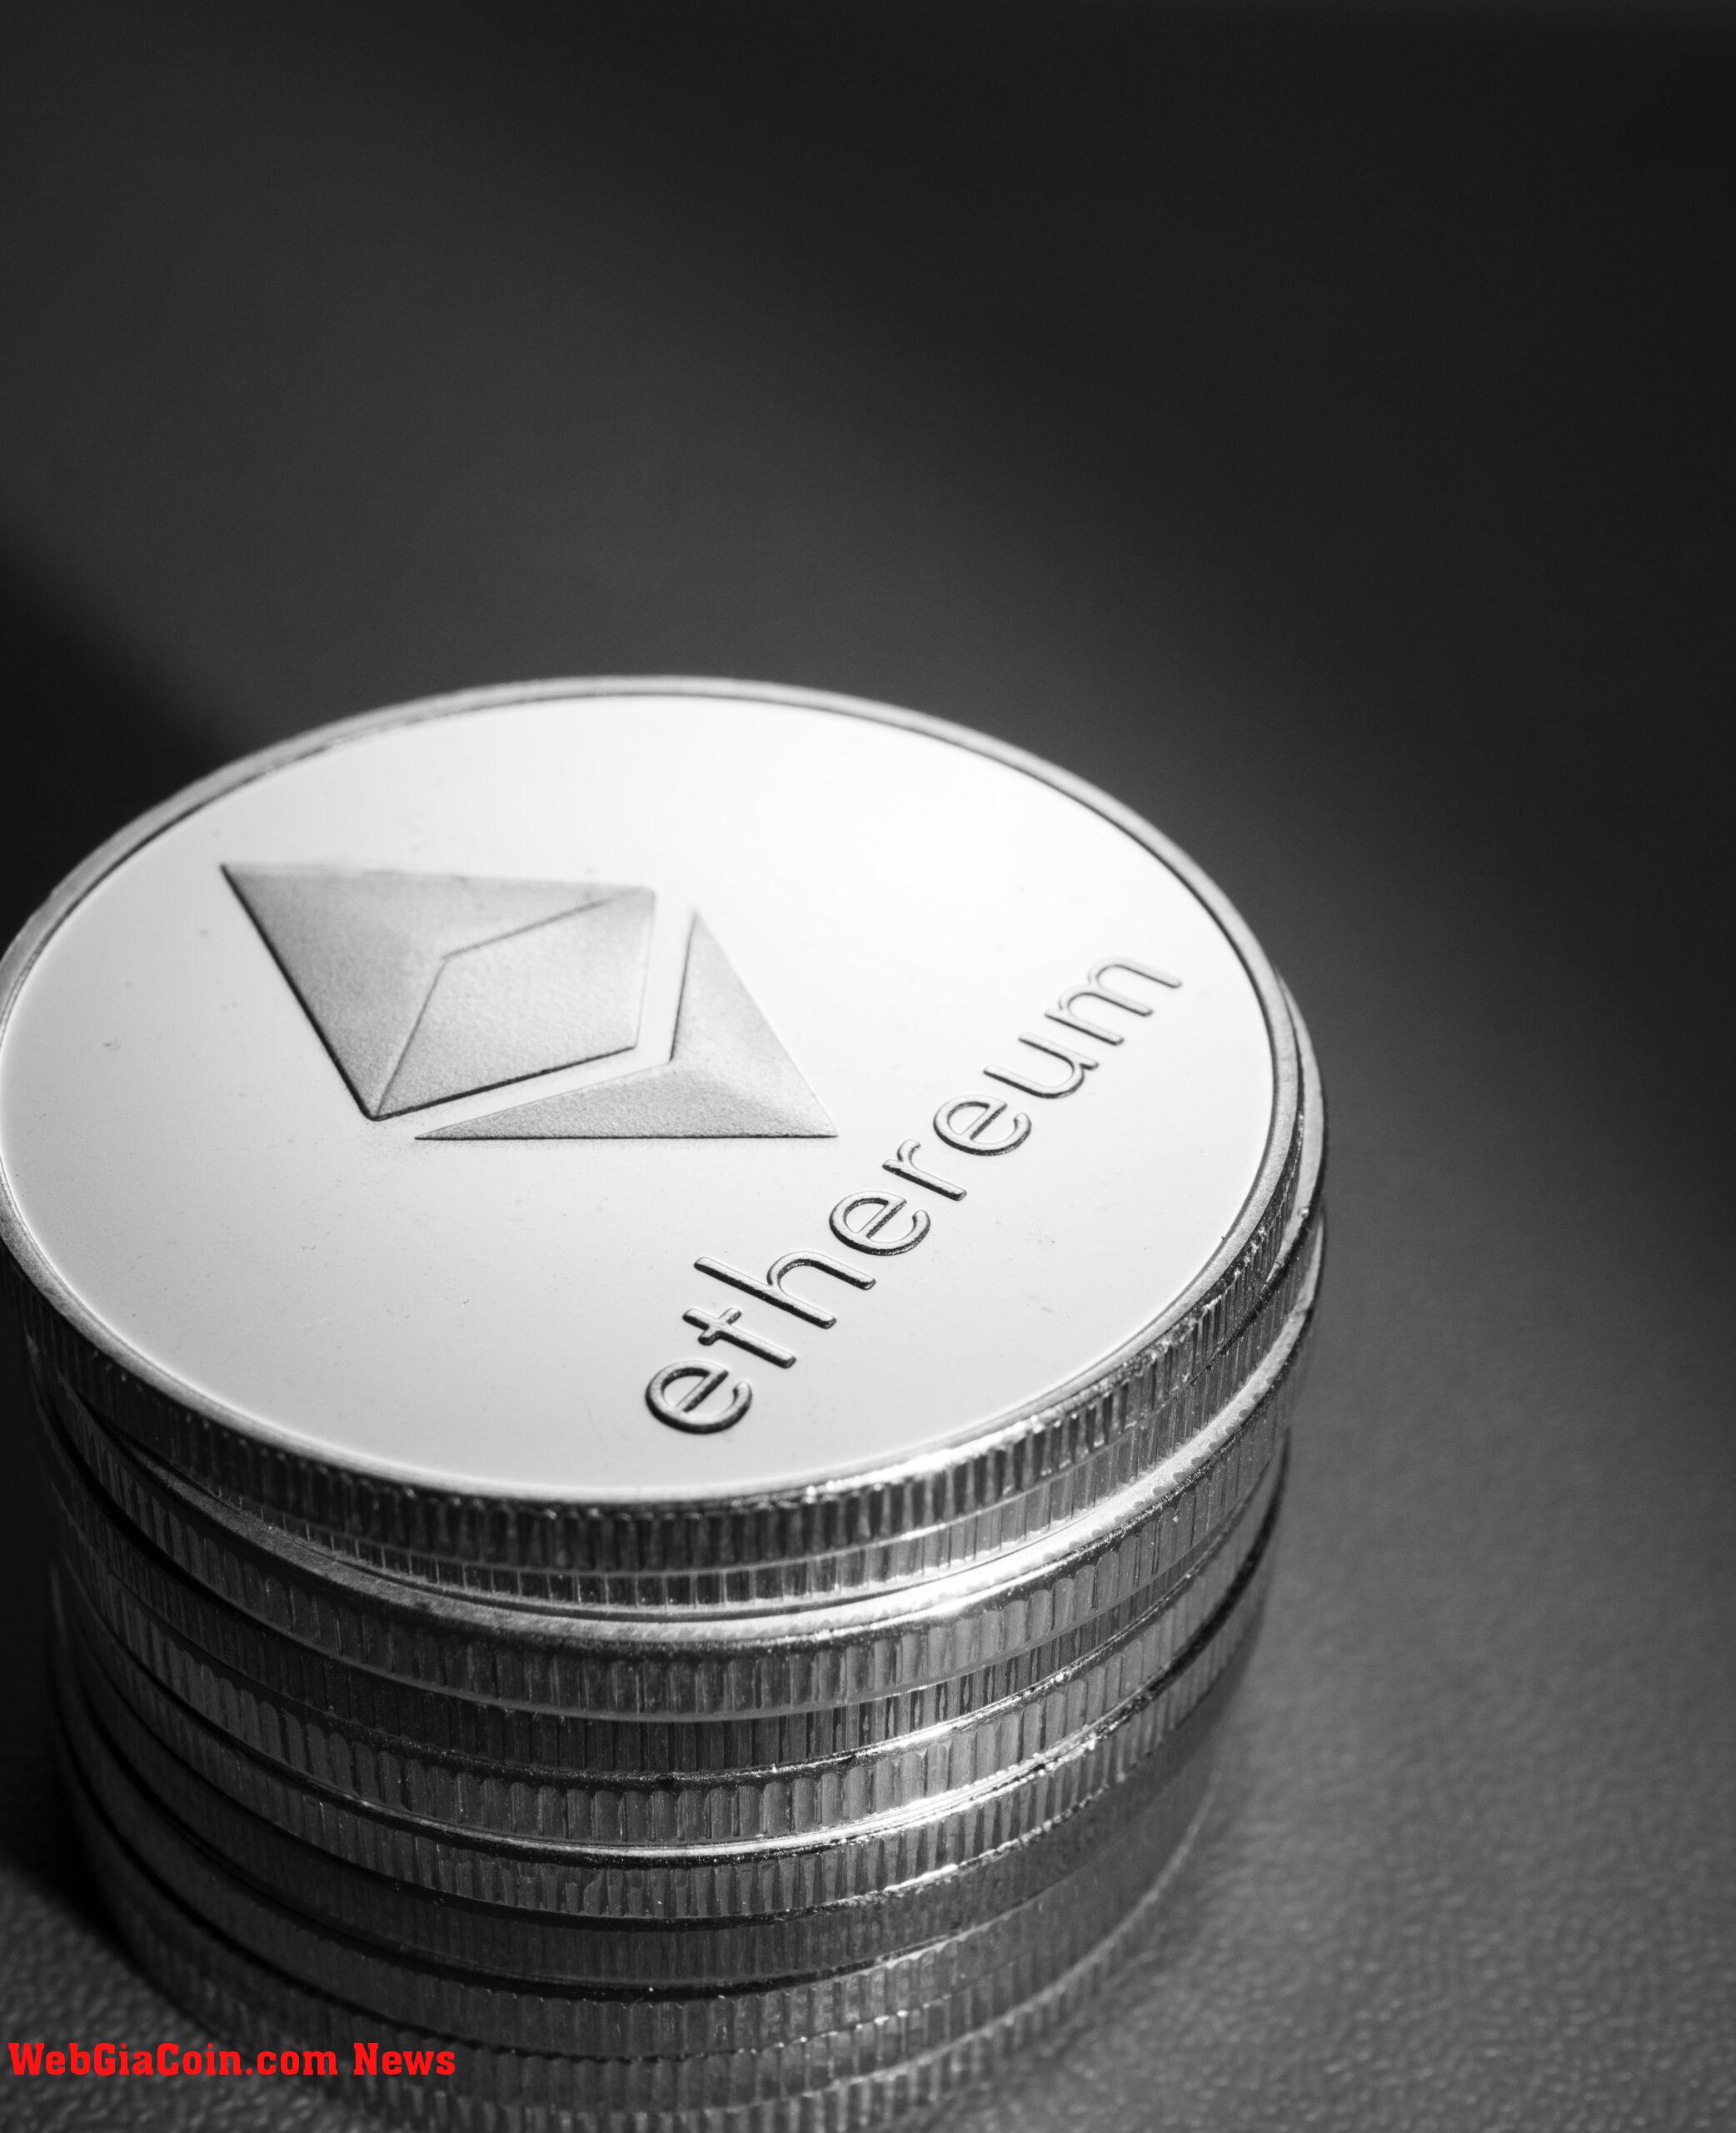 Nguồn cung của nền tảng giao dịch Ethereum đã giảm 37% sau khi giữ: Santiment